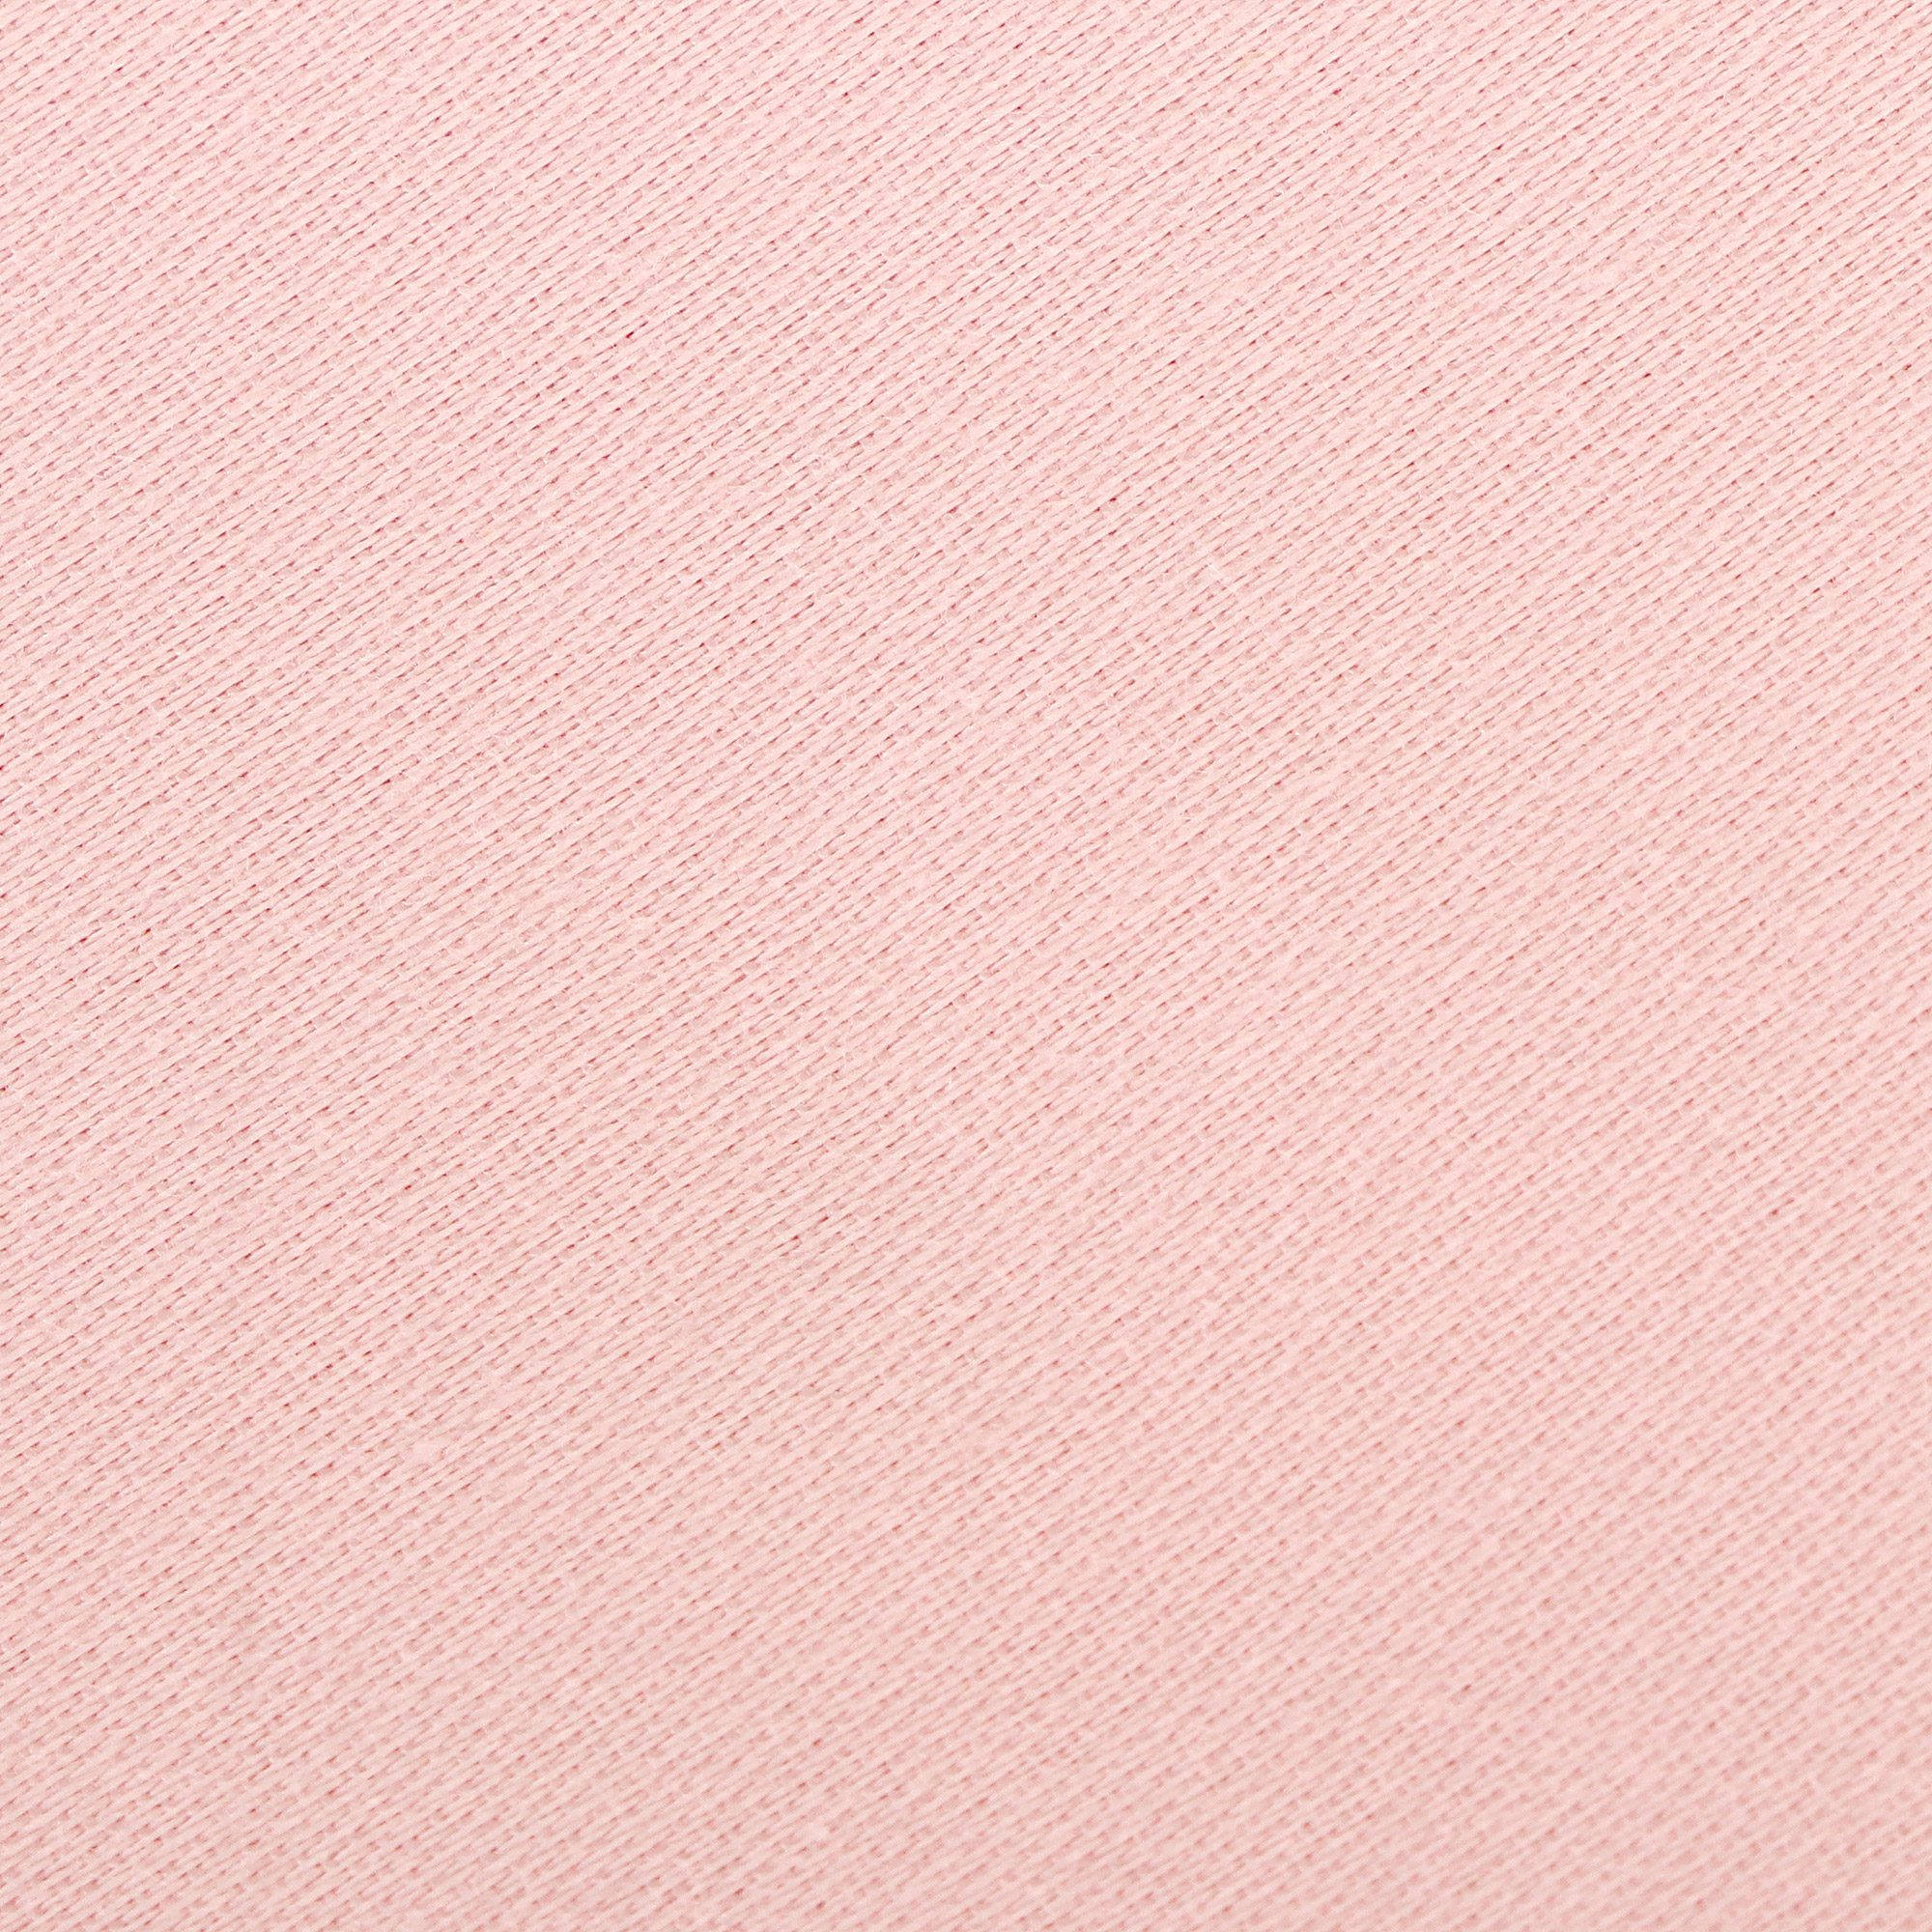 Комплект постельного белья La Besse Сатин розовый Кинг сайз, размер Кинг сайз - фото 4